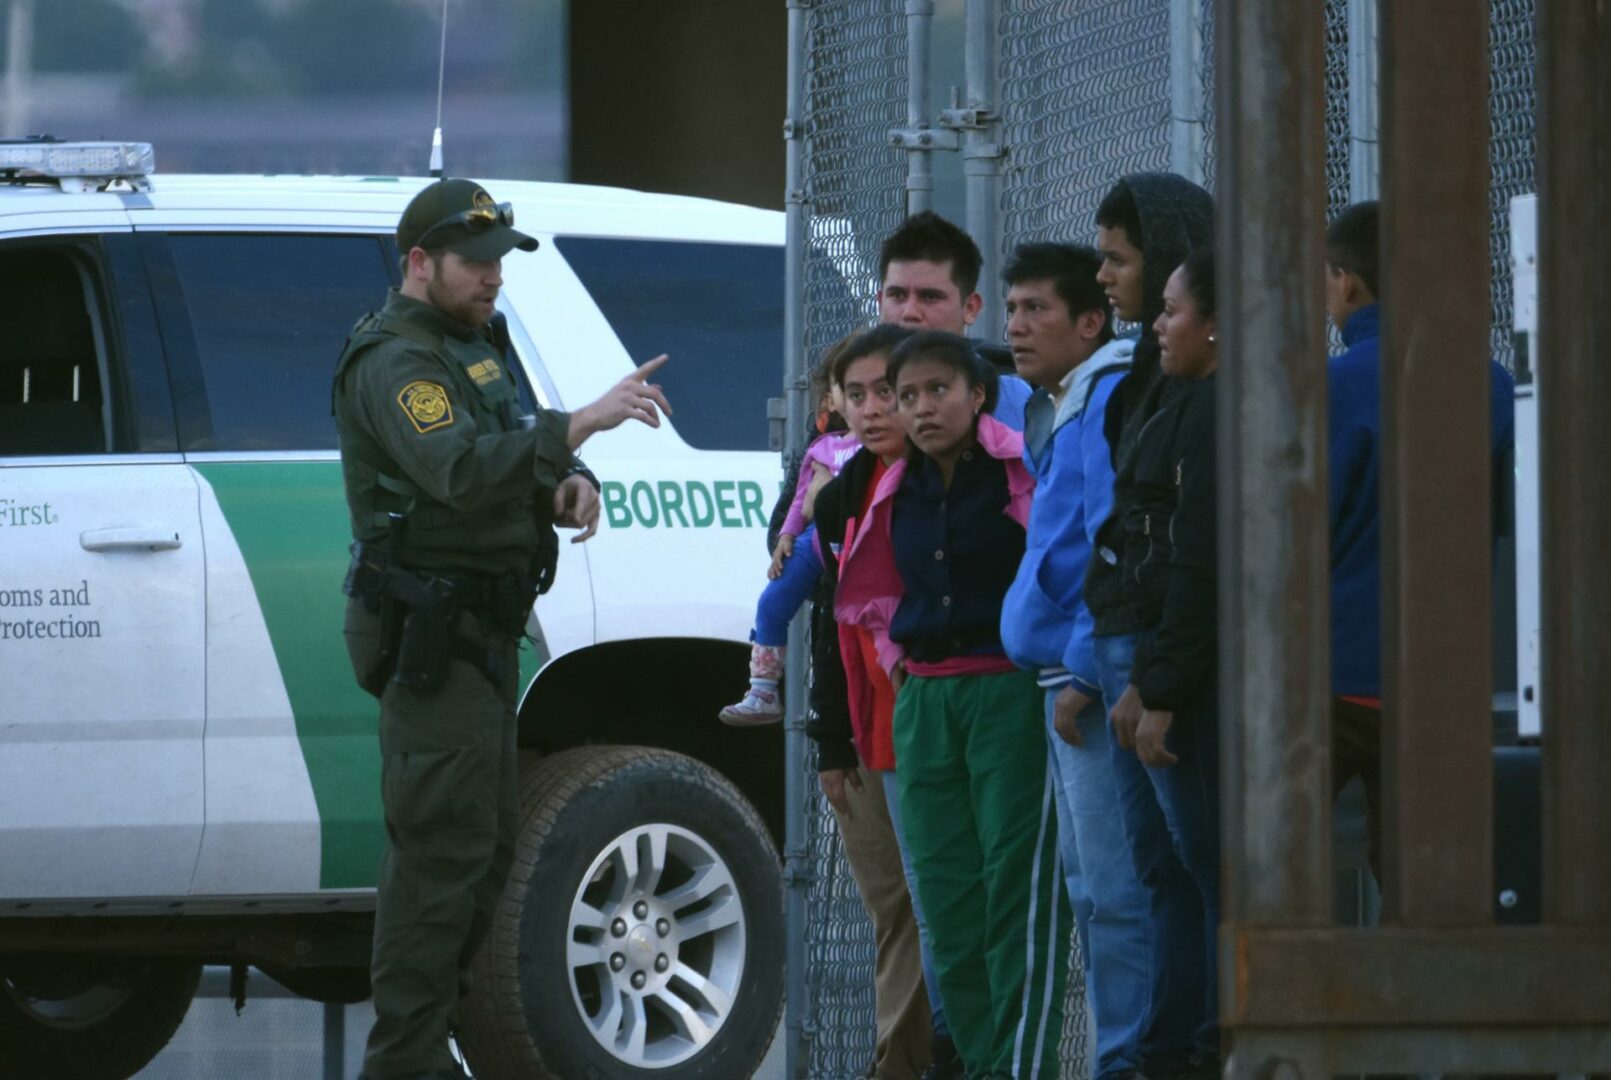 La mitad de los estadounidenses apoya la deportación masiva de migrantes, según un sondeo